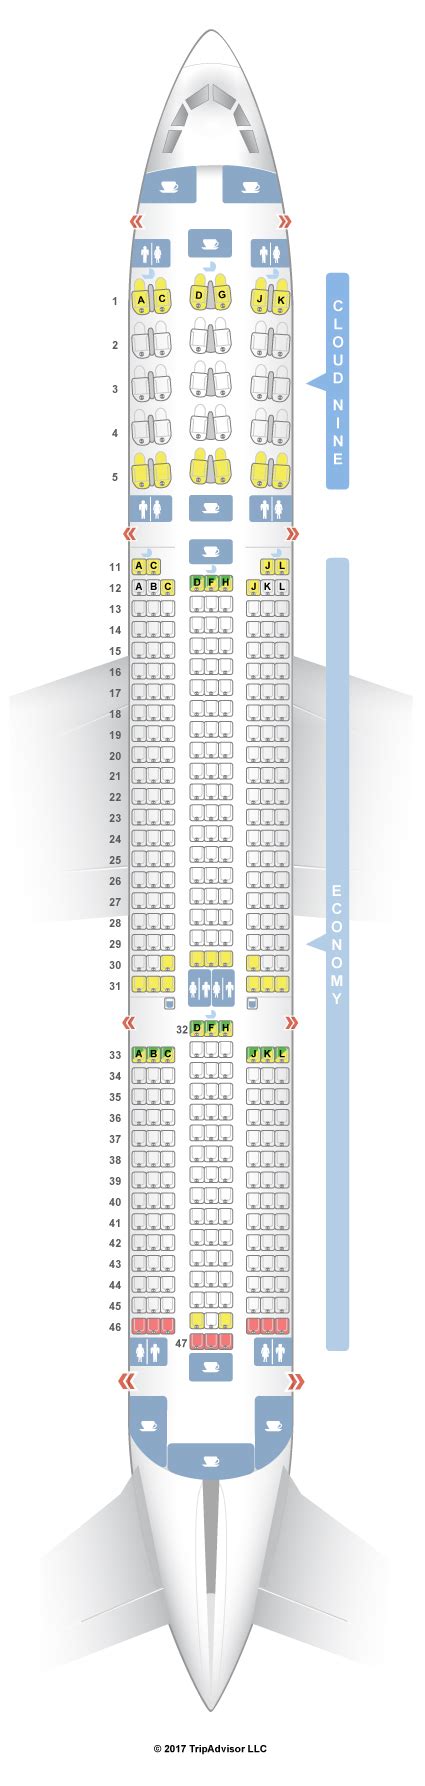 Seatguru Seat Map Ethiopian Airlines